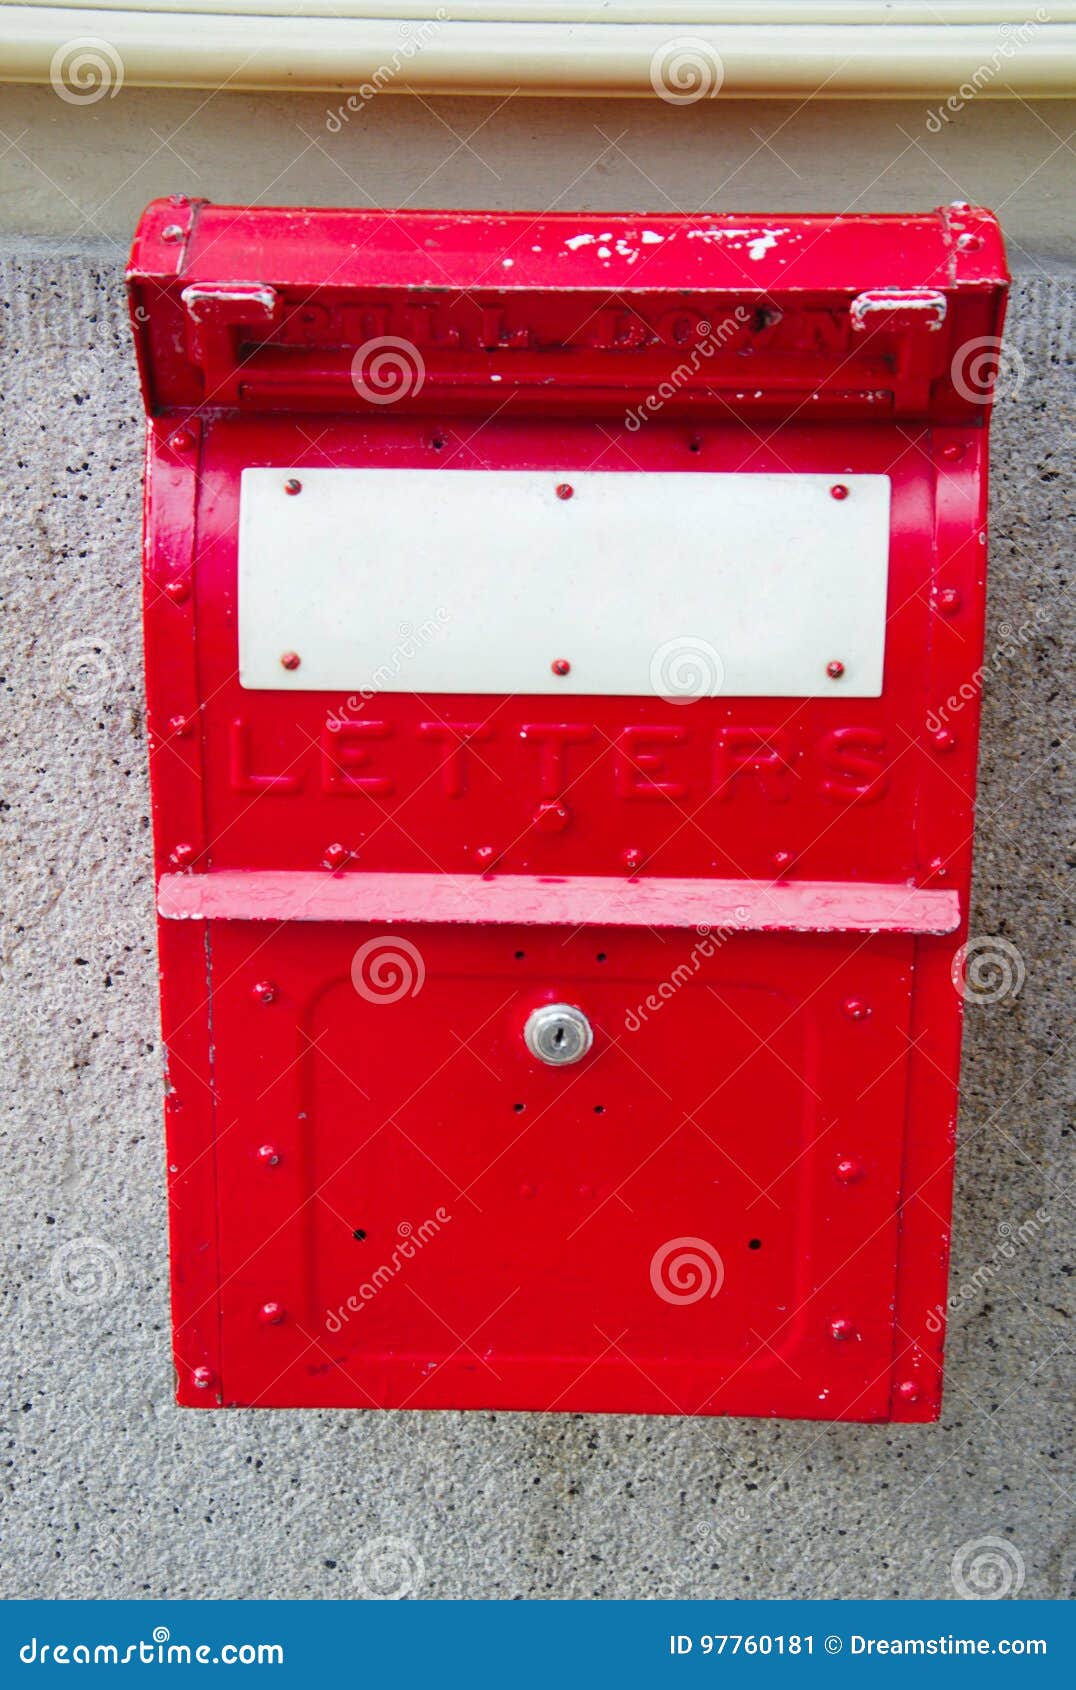 Alter Roter Englischer Briefkasten Stockbild Bild Von Paket